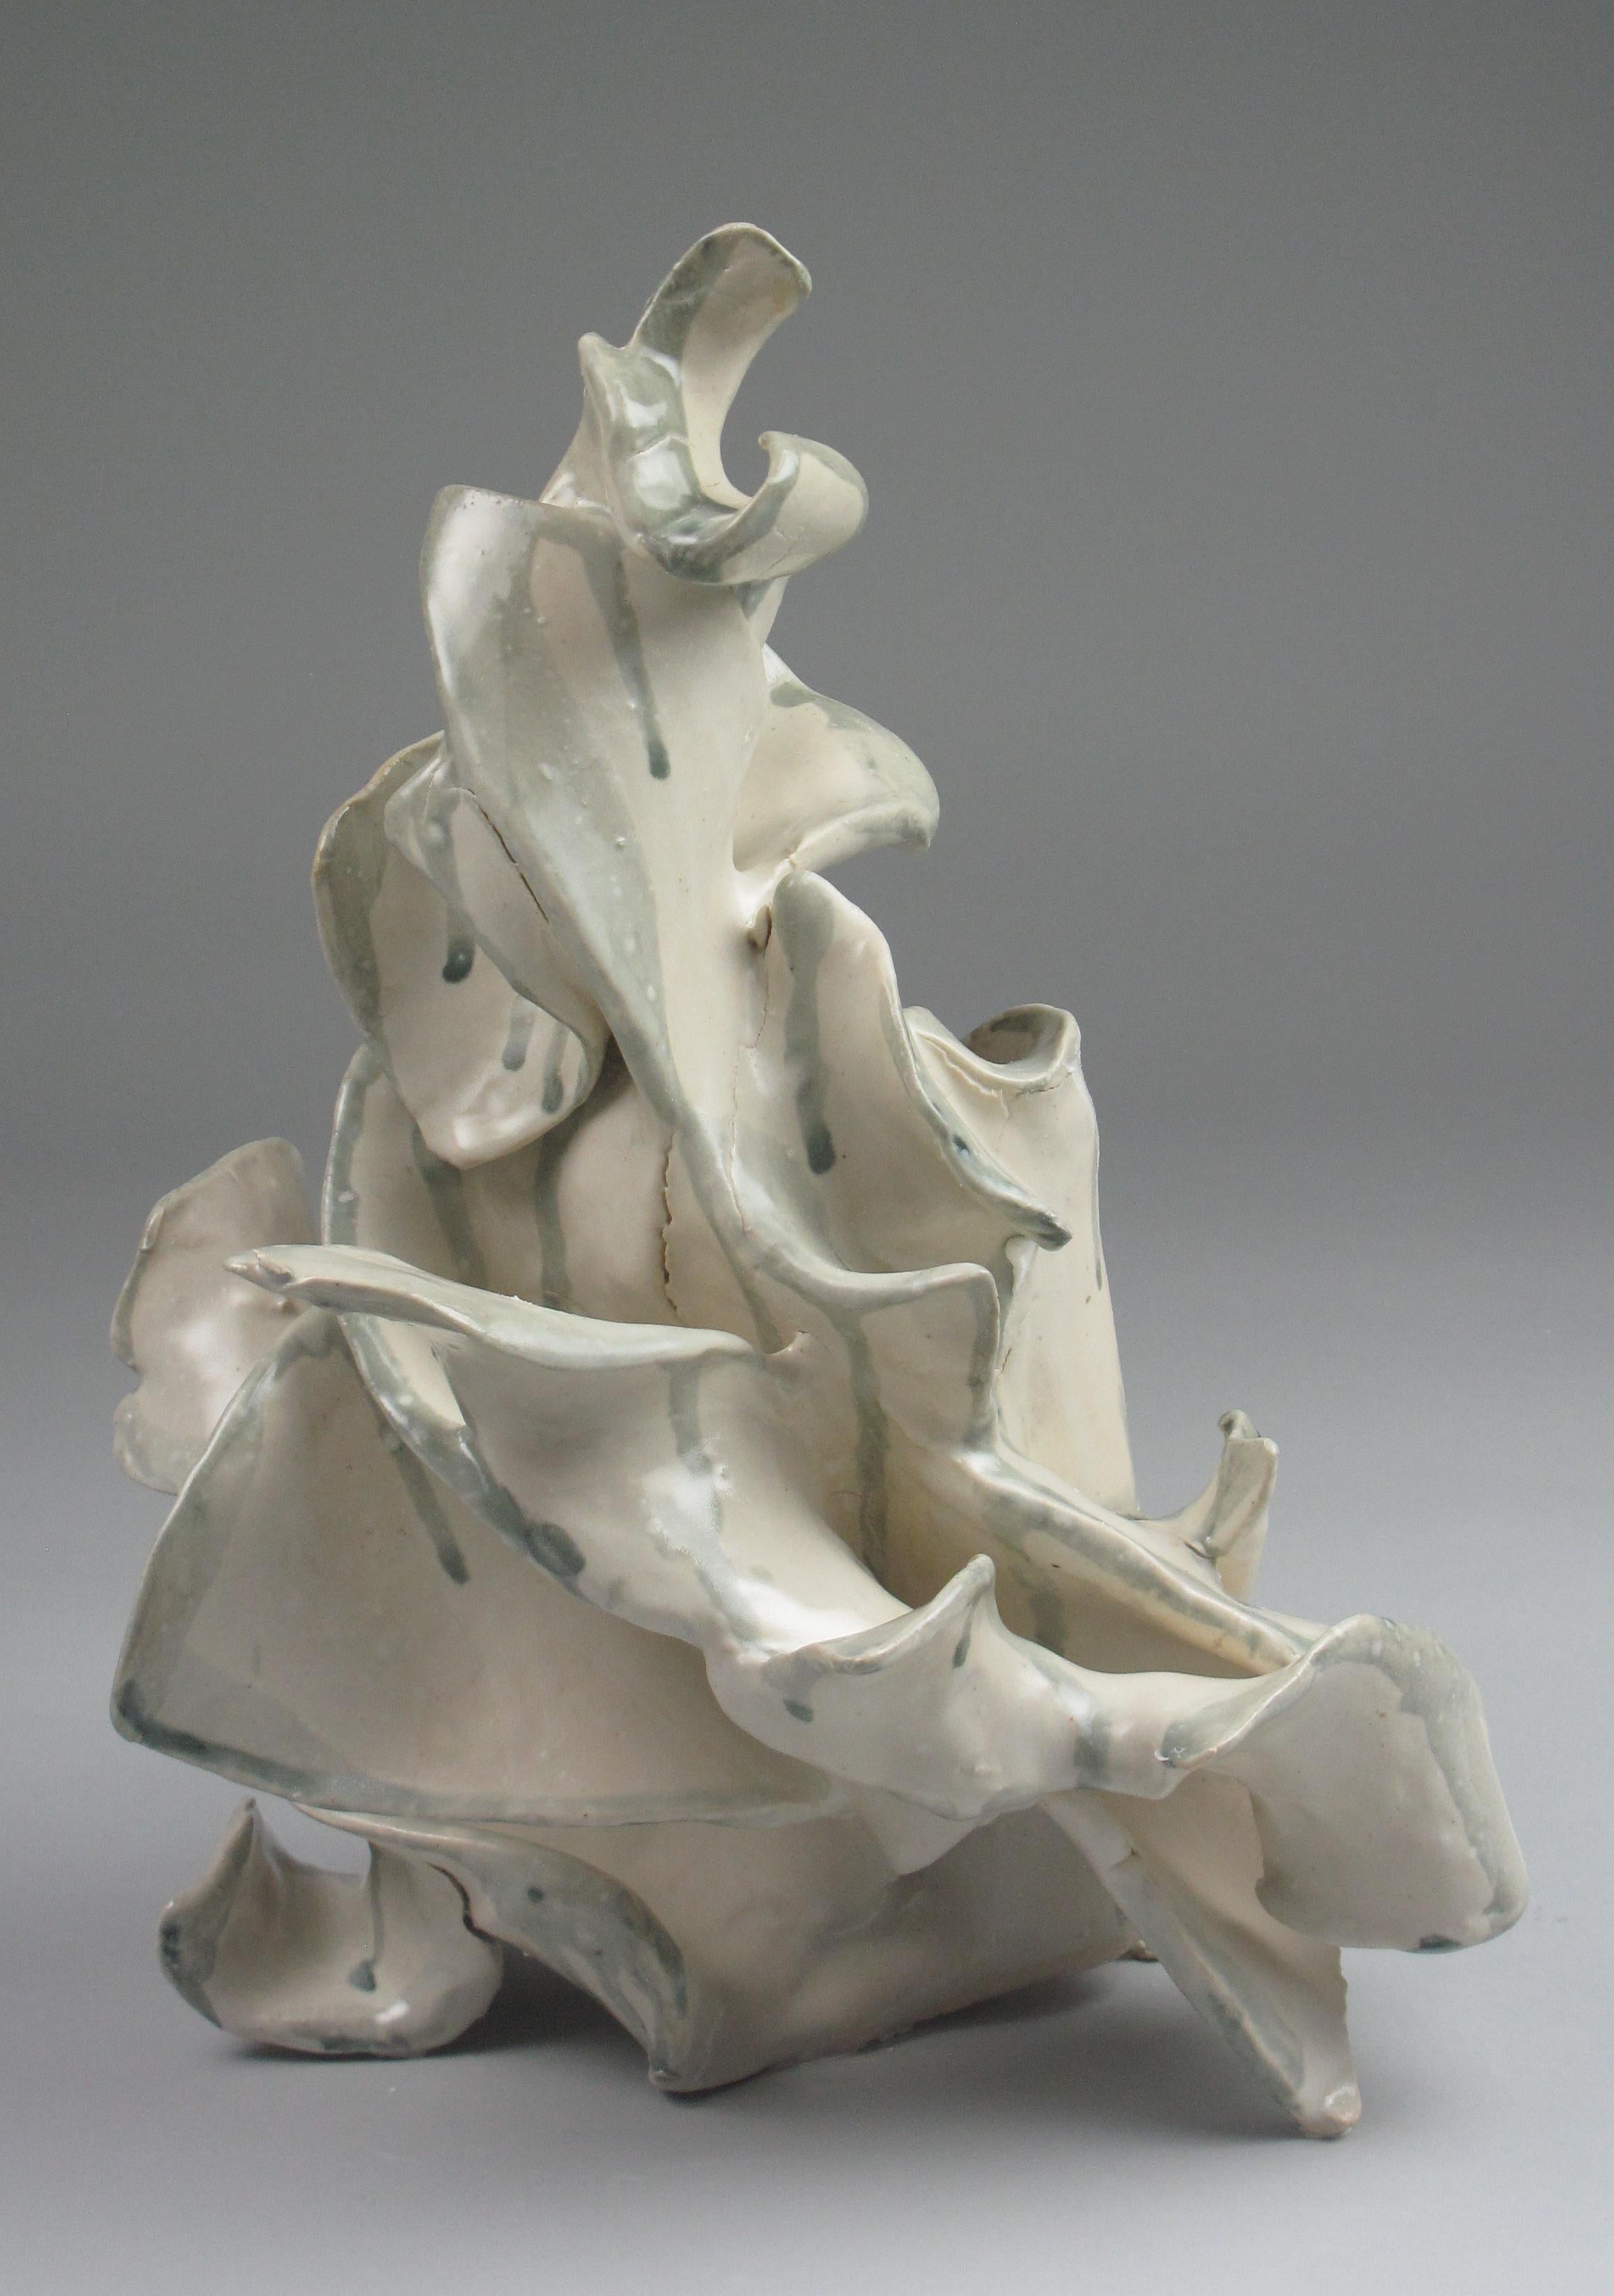 "Polyp", gestural, ceramic, sculpture, white, cream, grey, teal, stoneware